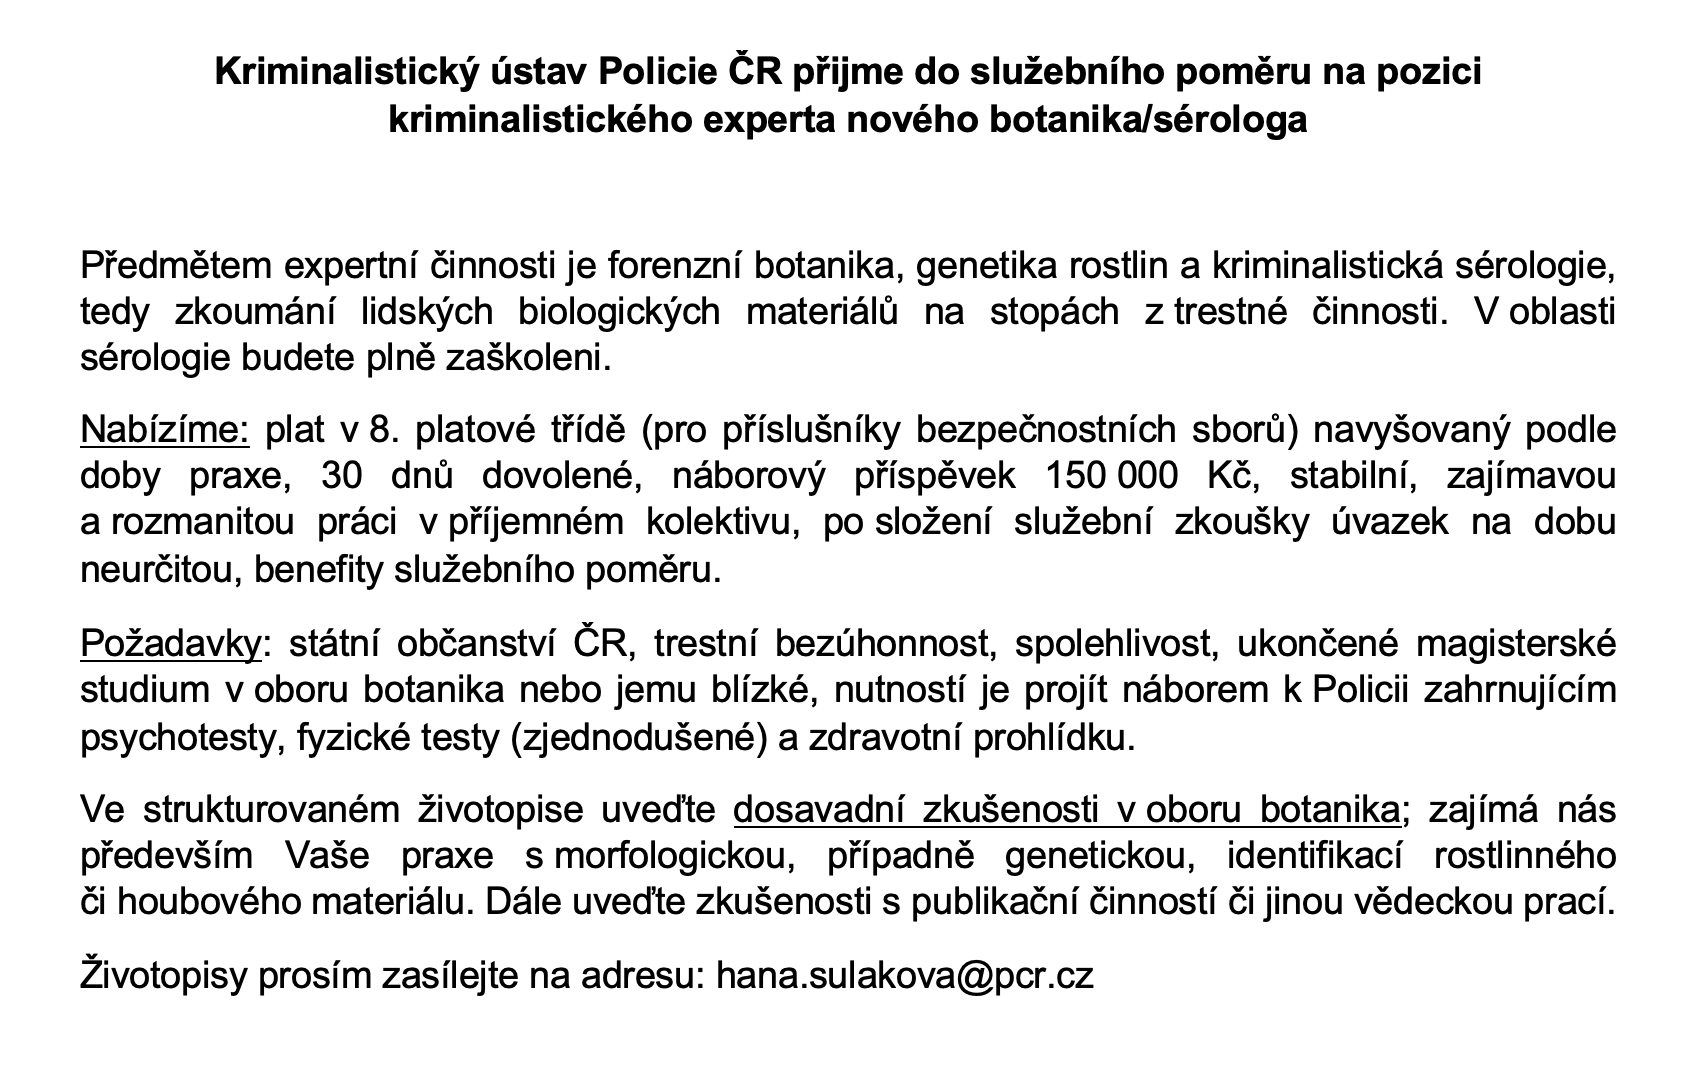 inzerát na pozici botanik/sérolog (Policie ČR)